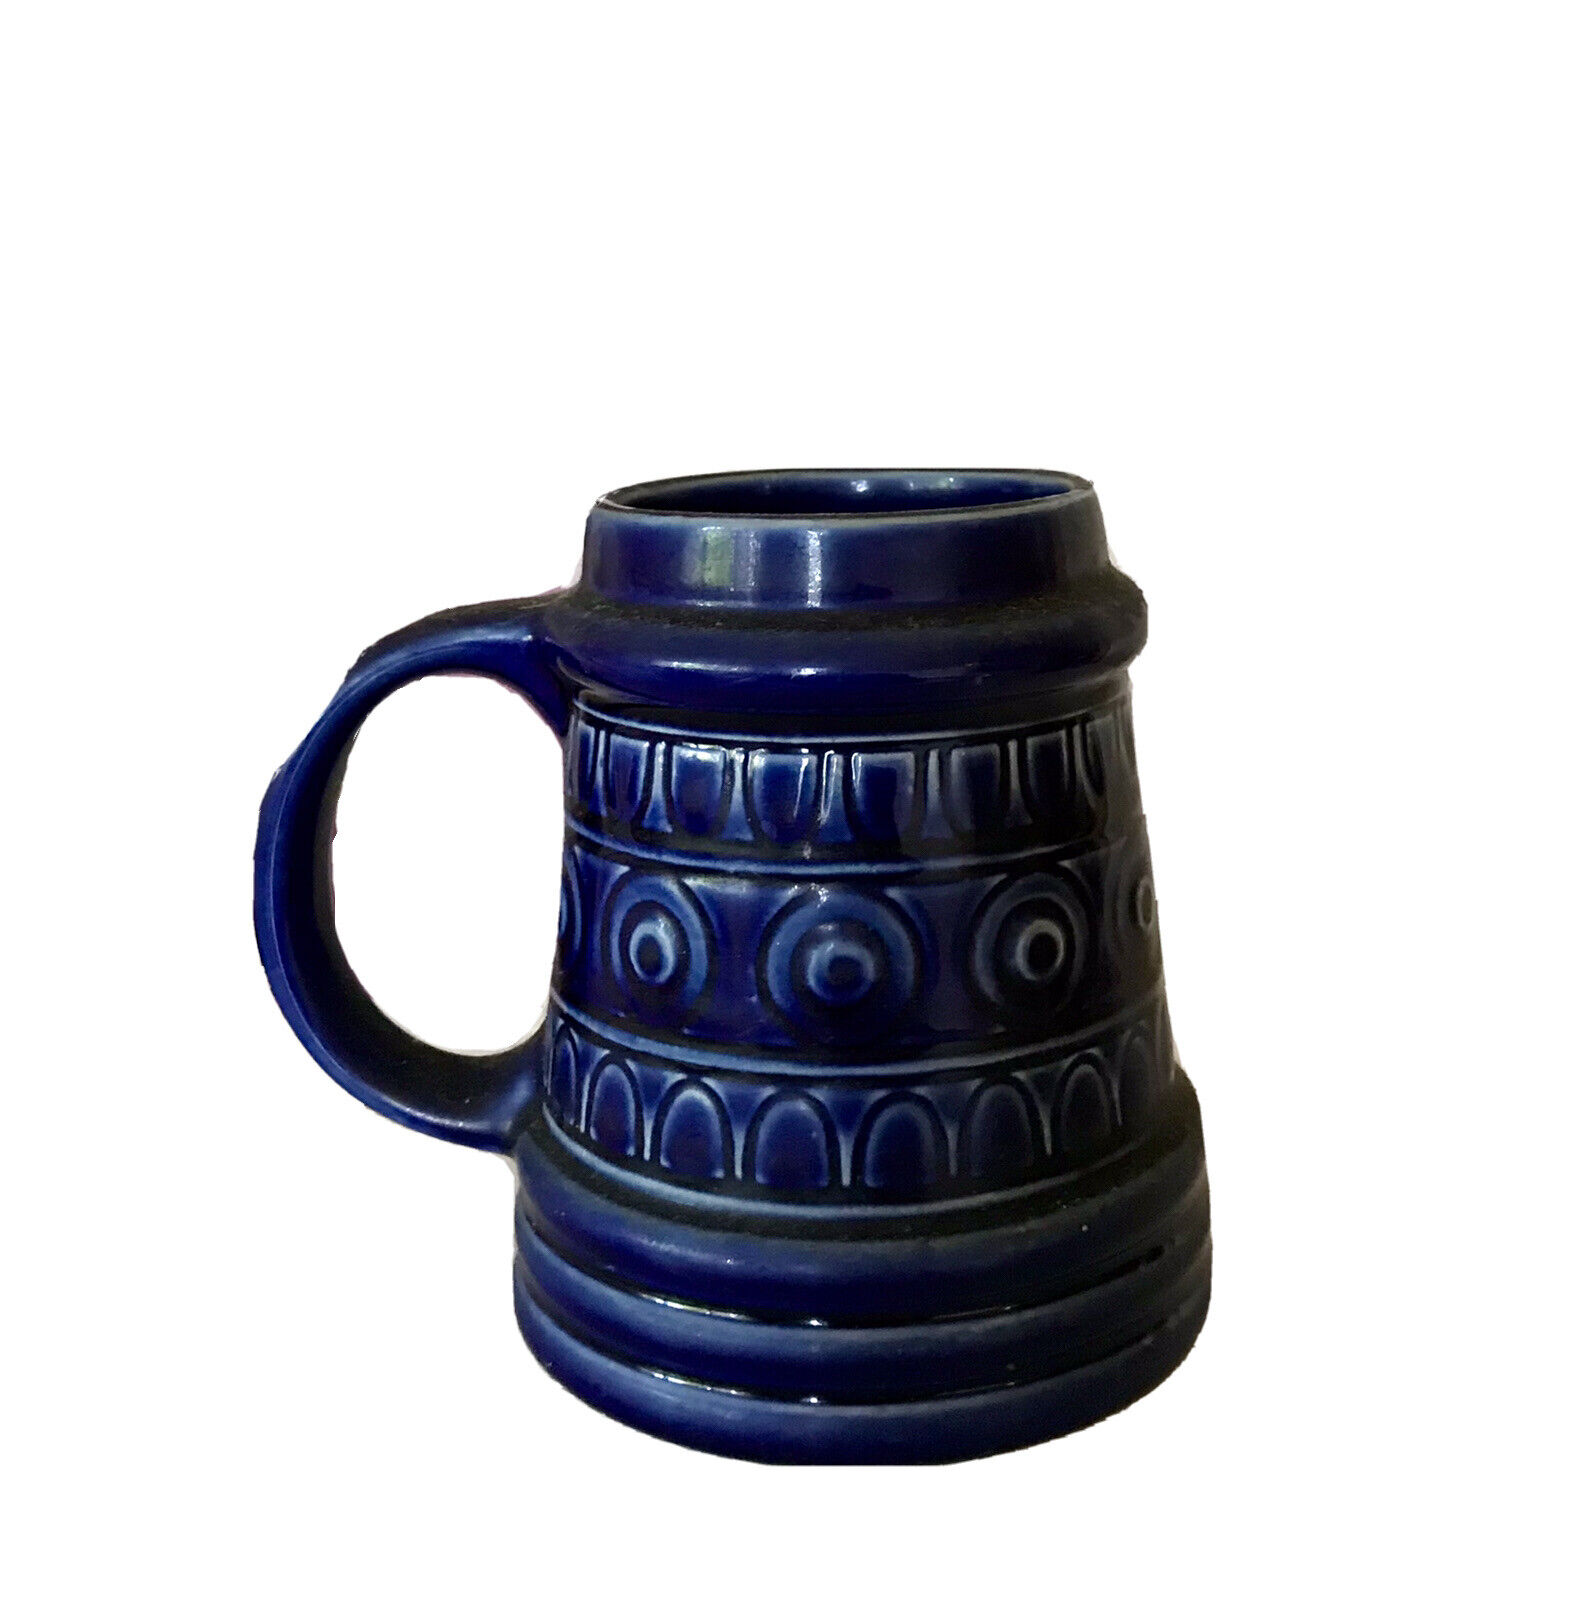 Krug Bierseidel Keramik Steingut Blau Kobaltblau gemarkt Bierhumpen